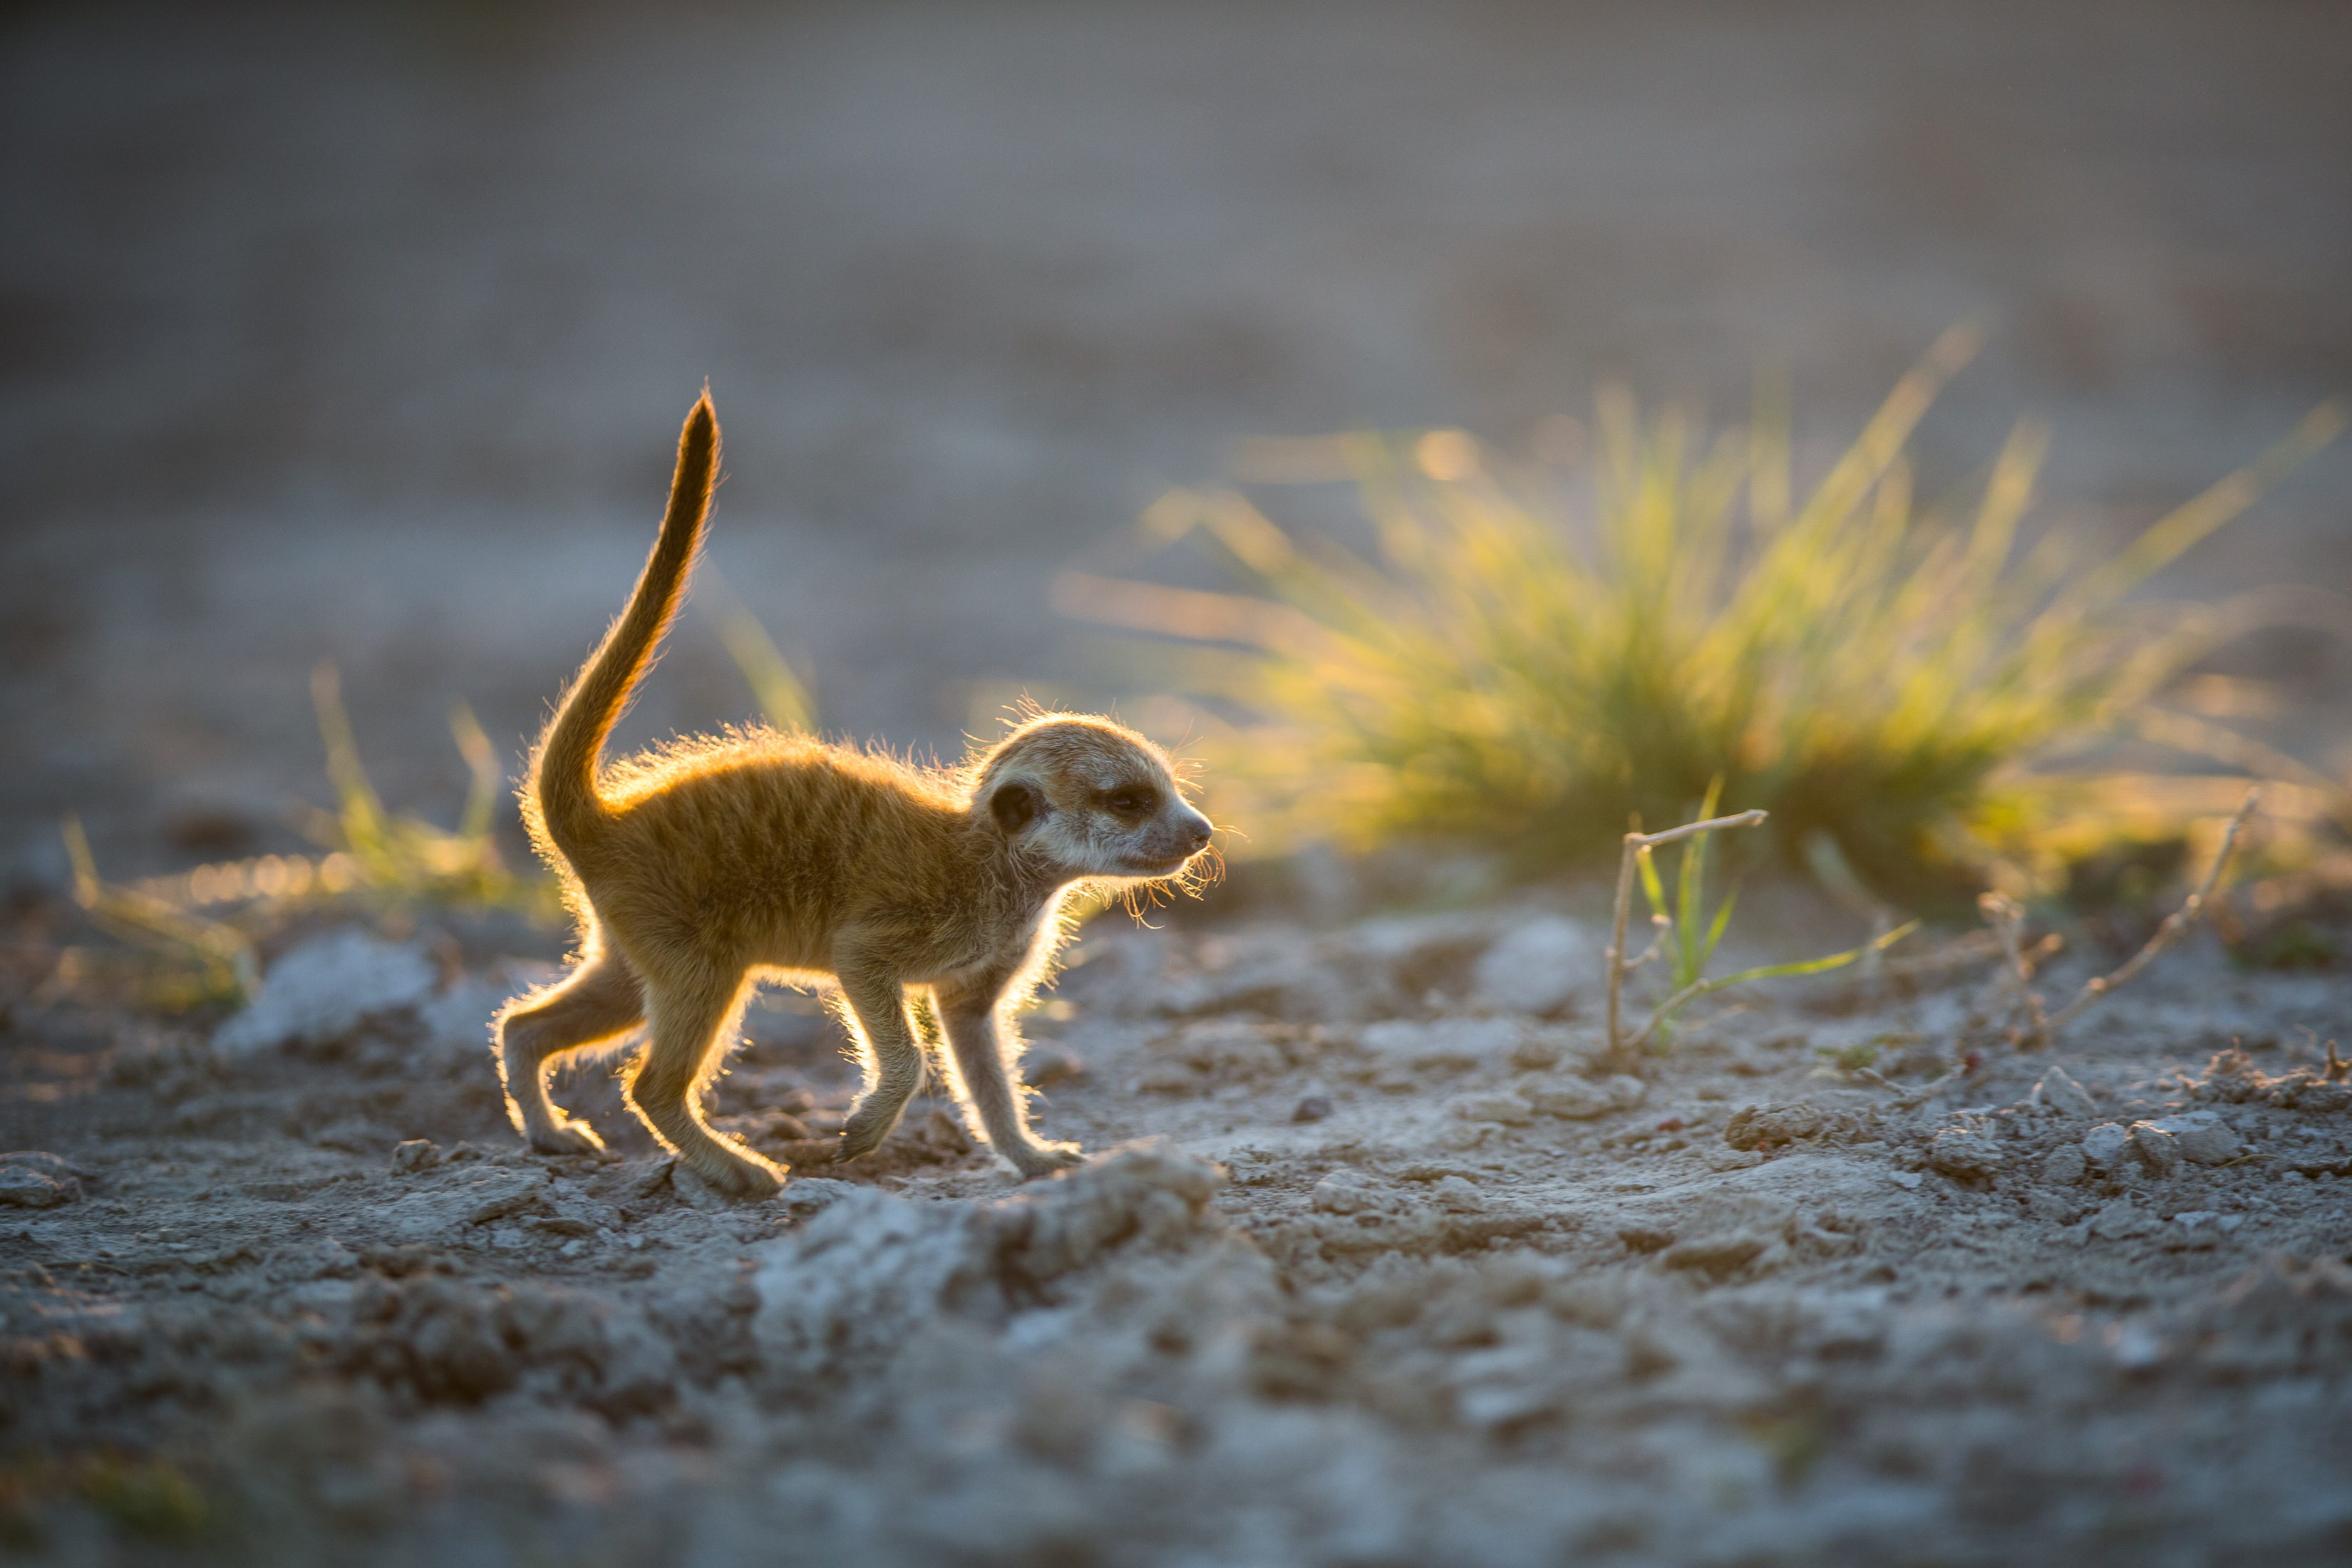 Meerkat photography - Will Burrard Lucas by Will Burrard Lucas